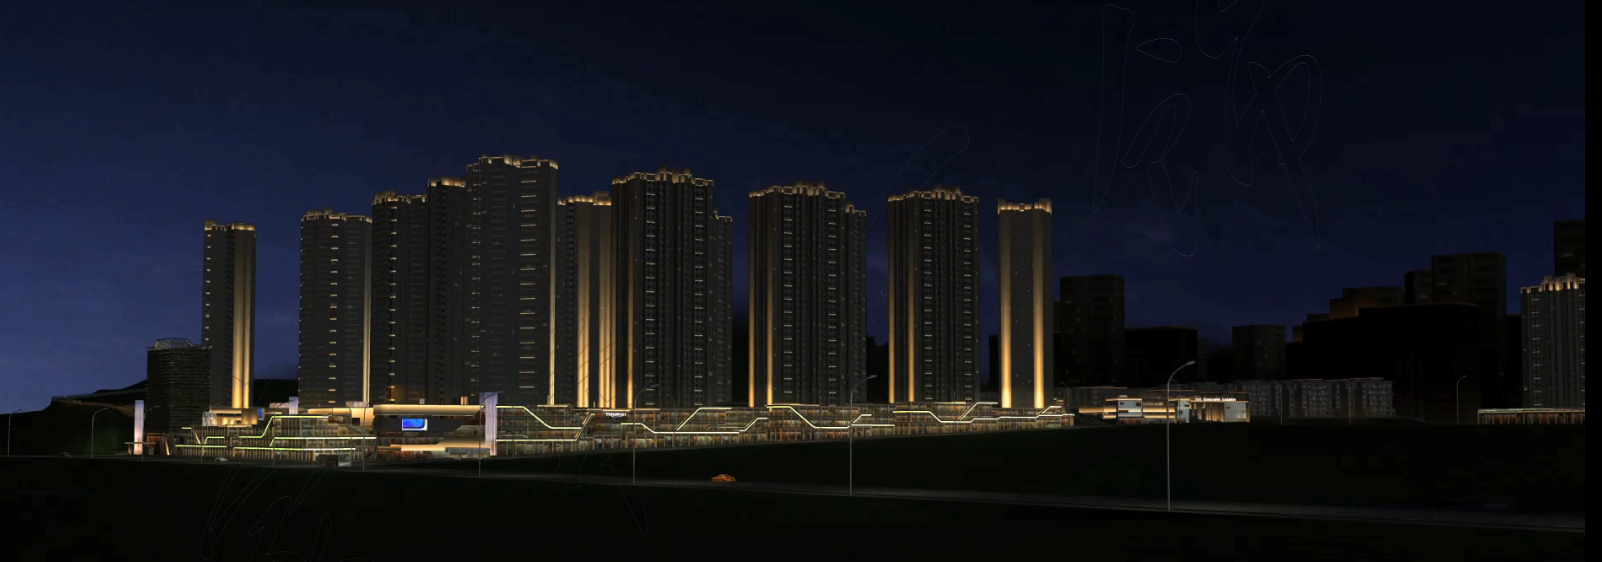 城市建筑群灯饰规划3